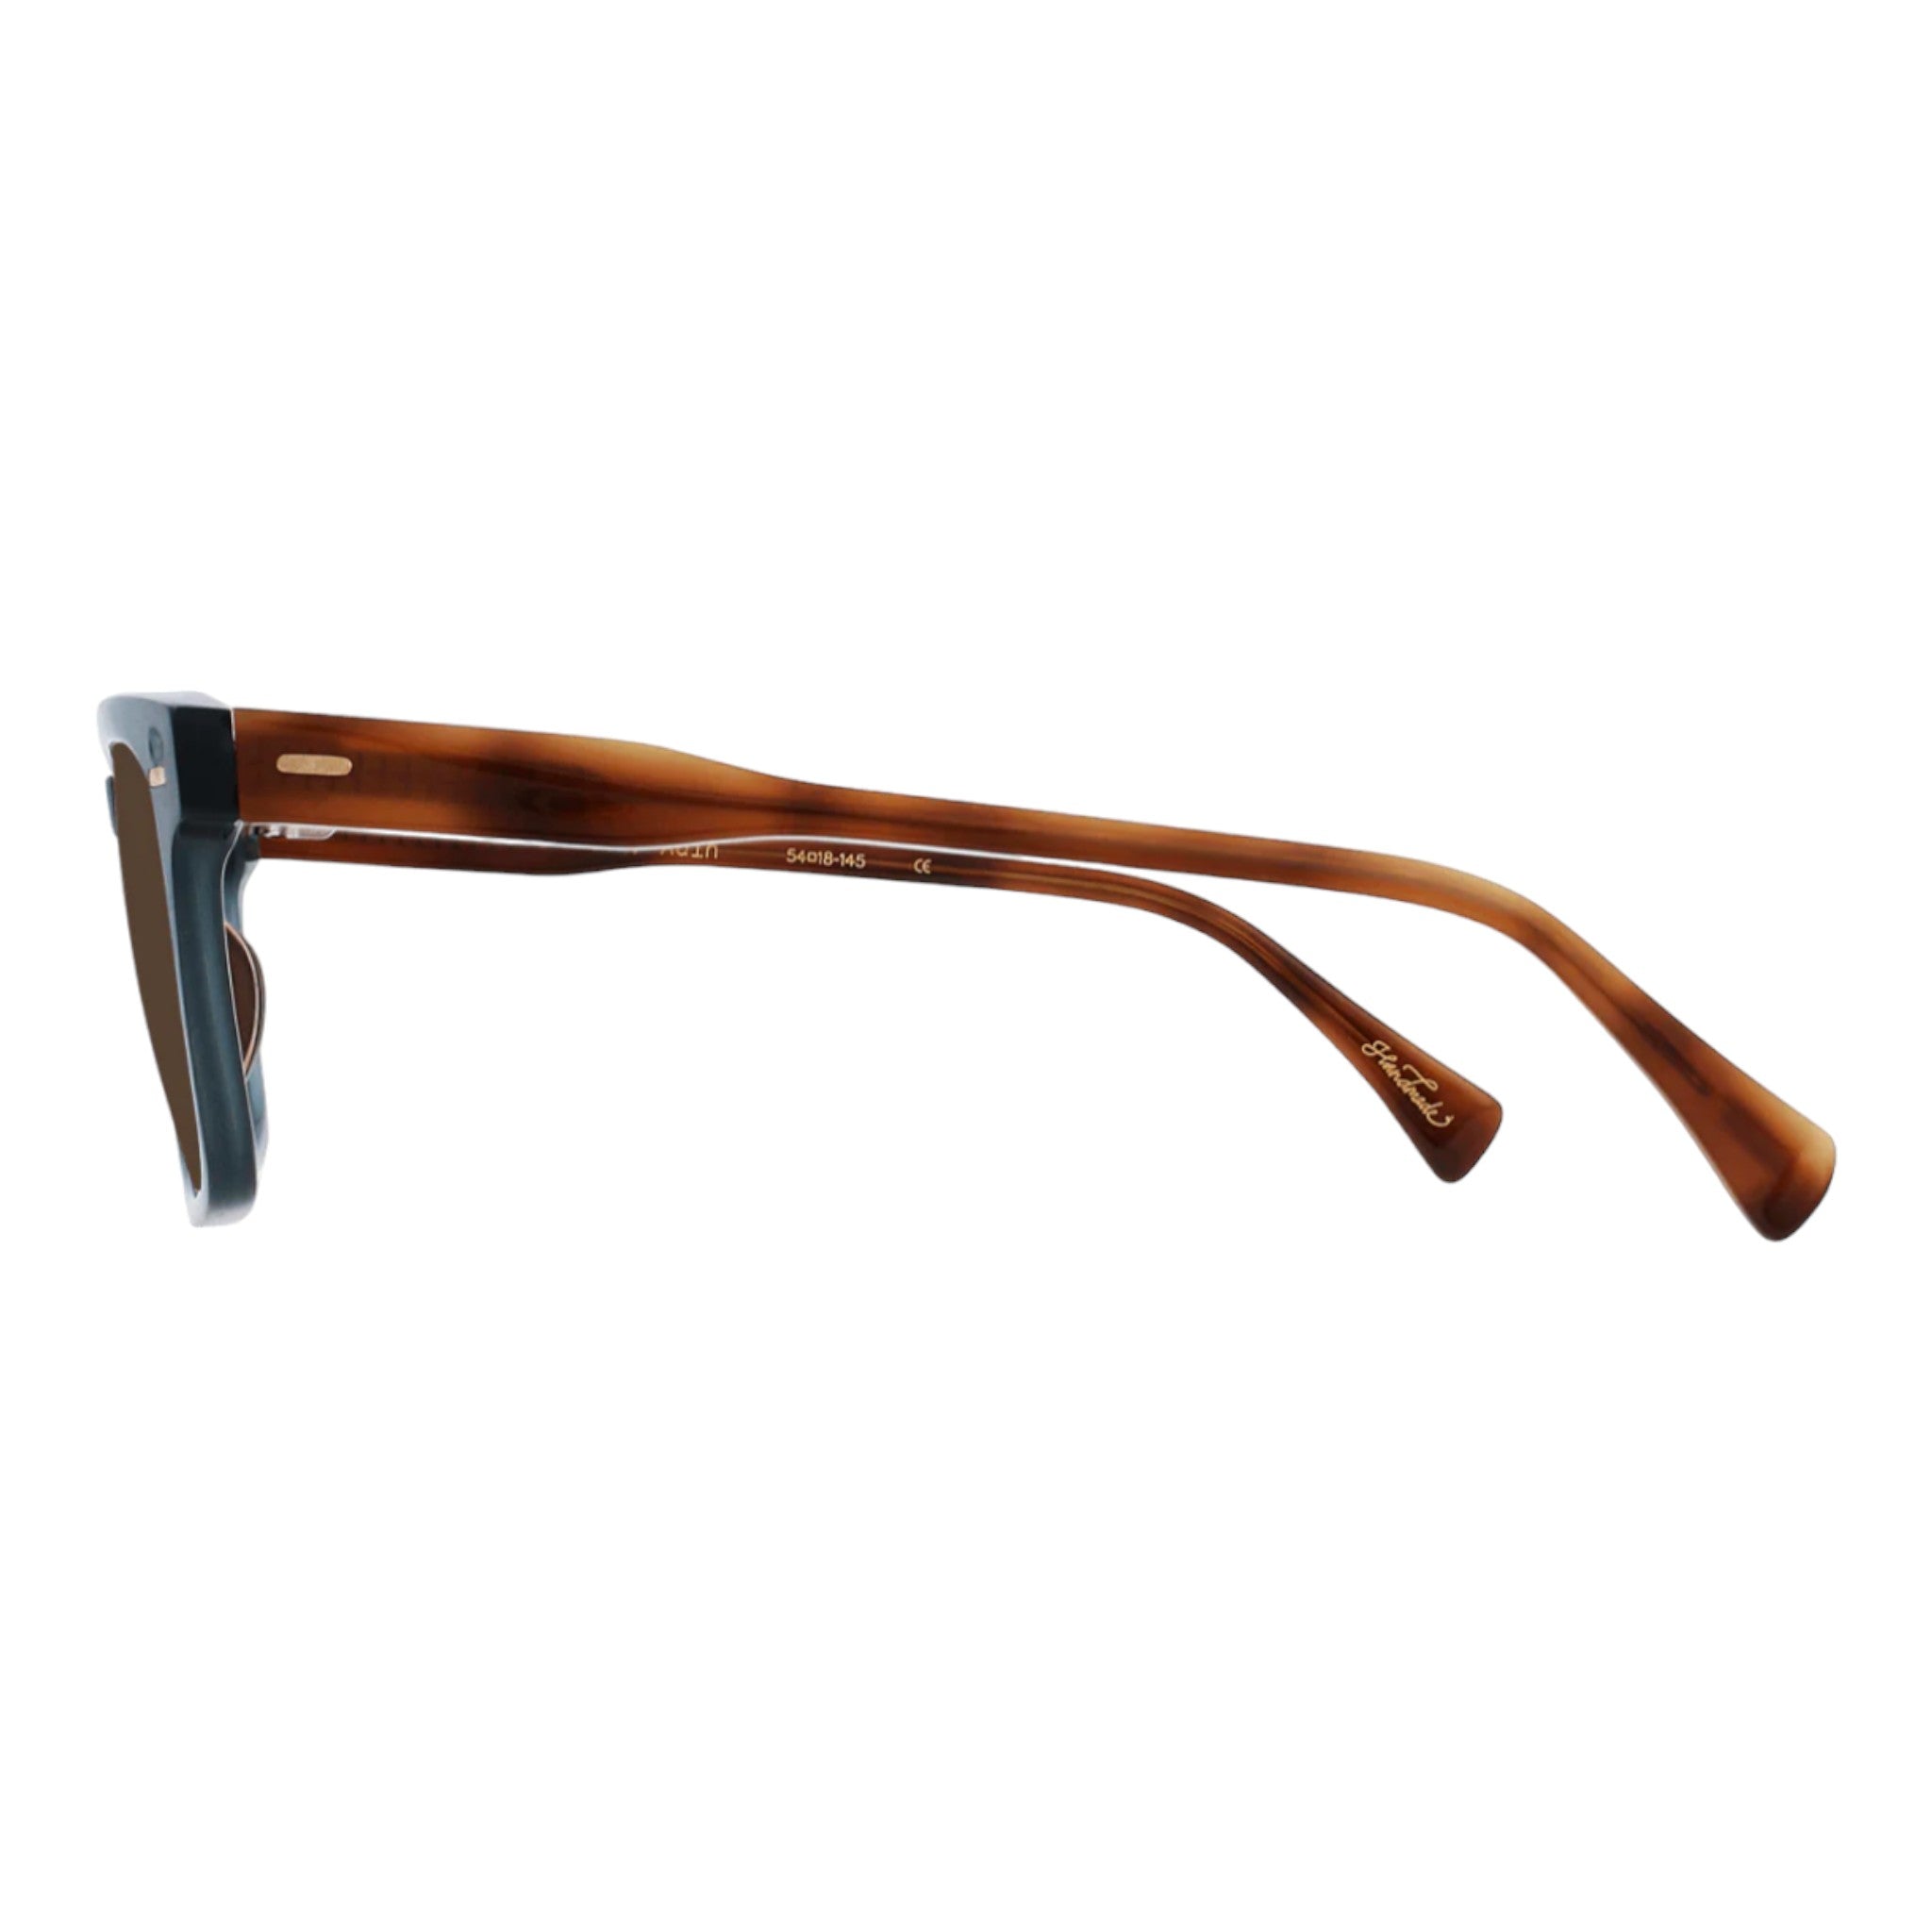 Raen - Adin 54 Sunglasses - Cirus / Vibrant Brown Polarized